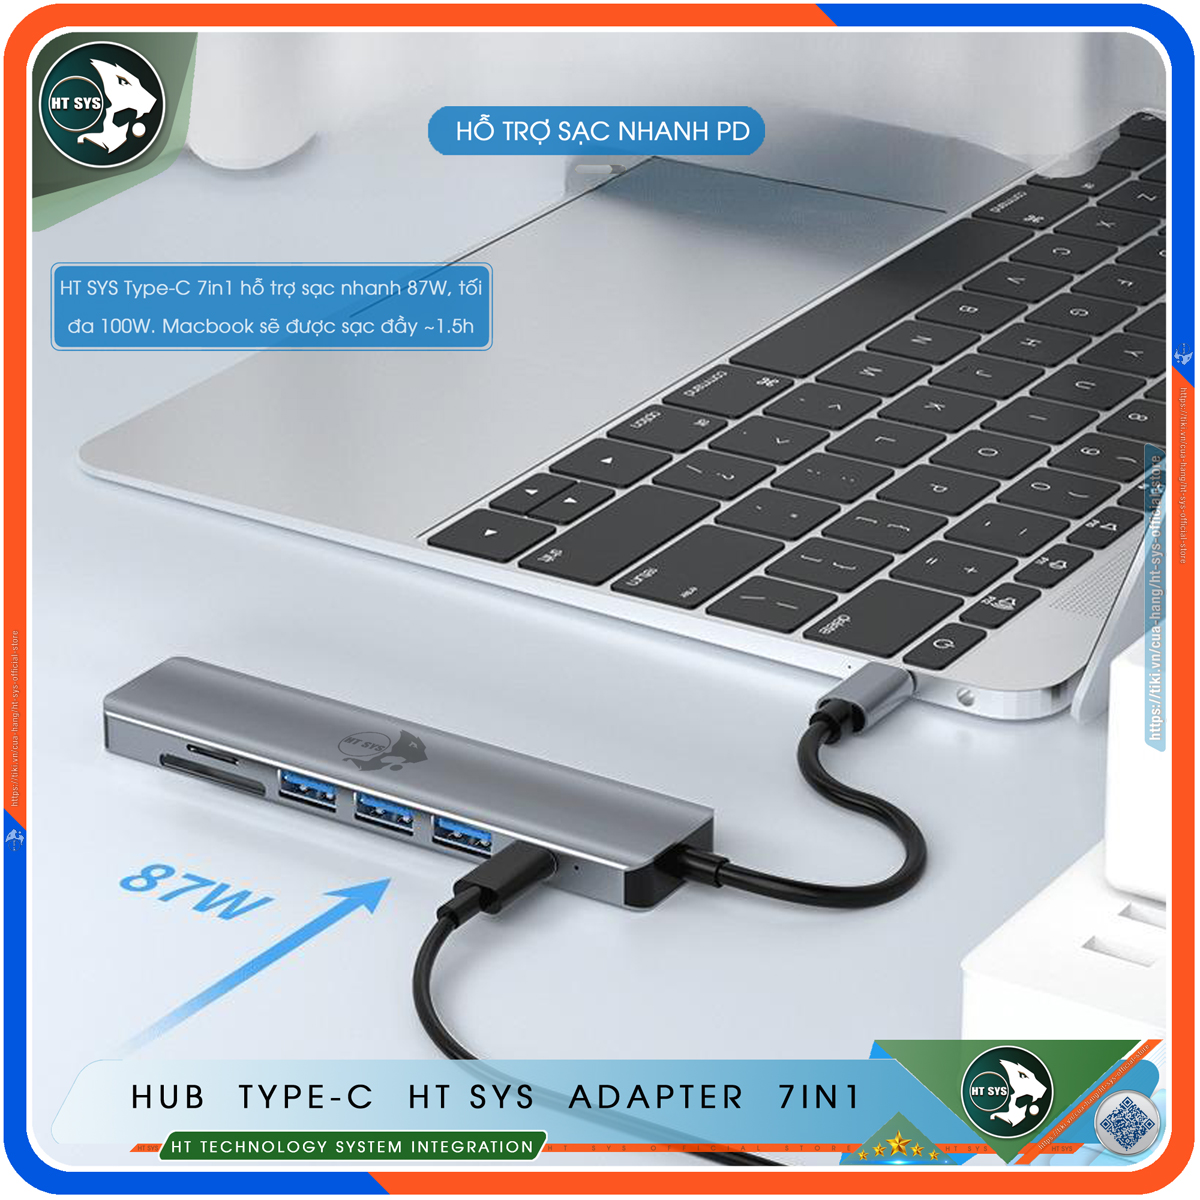 Hub Type C To HDMI HT SYS 7in1 Chuẩn HDTV - Hub Chuyển Đổi USB Type-C 7 Cổng - HDMI 4K, USB 3.0, USB-C, Sạc Nhanh Type C PD, Khe Đọc Thẻ SD/TF - Kết Nối Tốc Độ Cao - Dành Cho MacBook, Tivi, Laptop, PC, Máy Tính Bảng, Smartphone – Hàng Chính Hãng